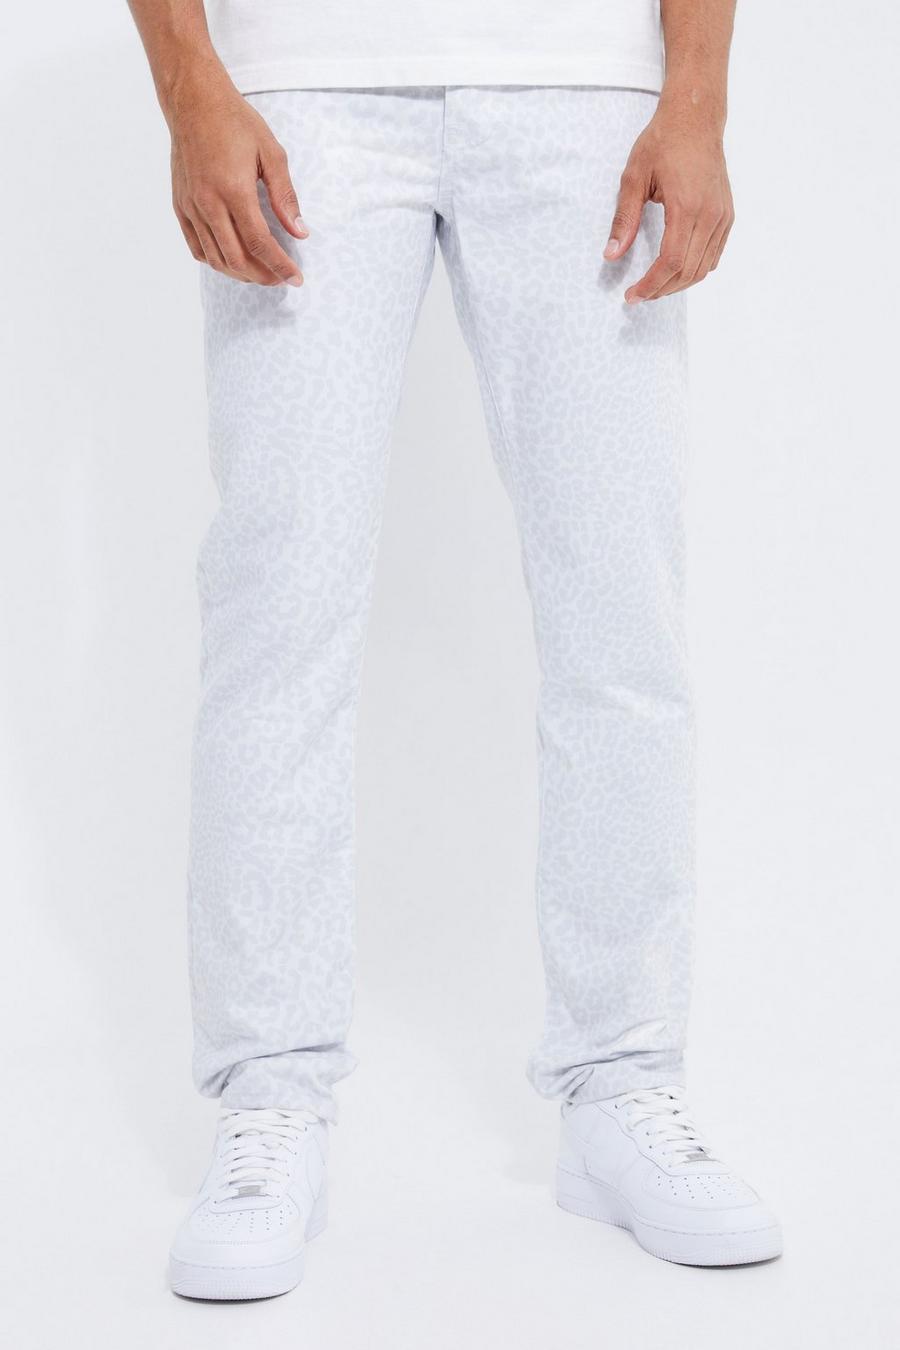 אפור gris ג'ינס בגזרה ישרה עם הדפס חיות חוזר, לגברים גבוהים image number 1